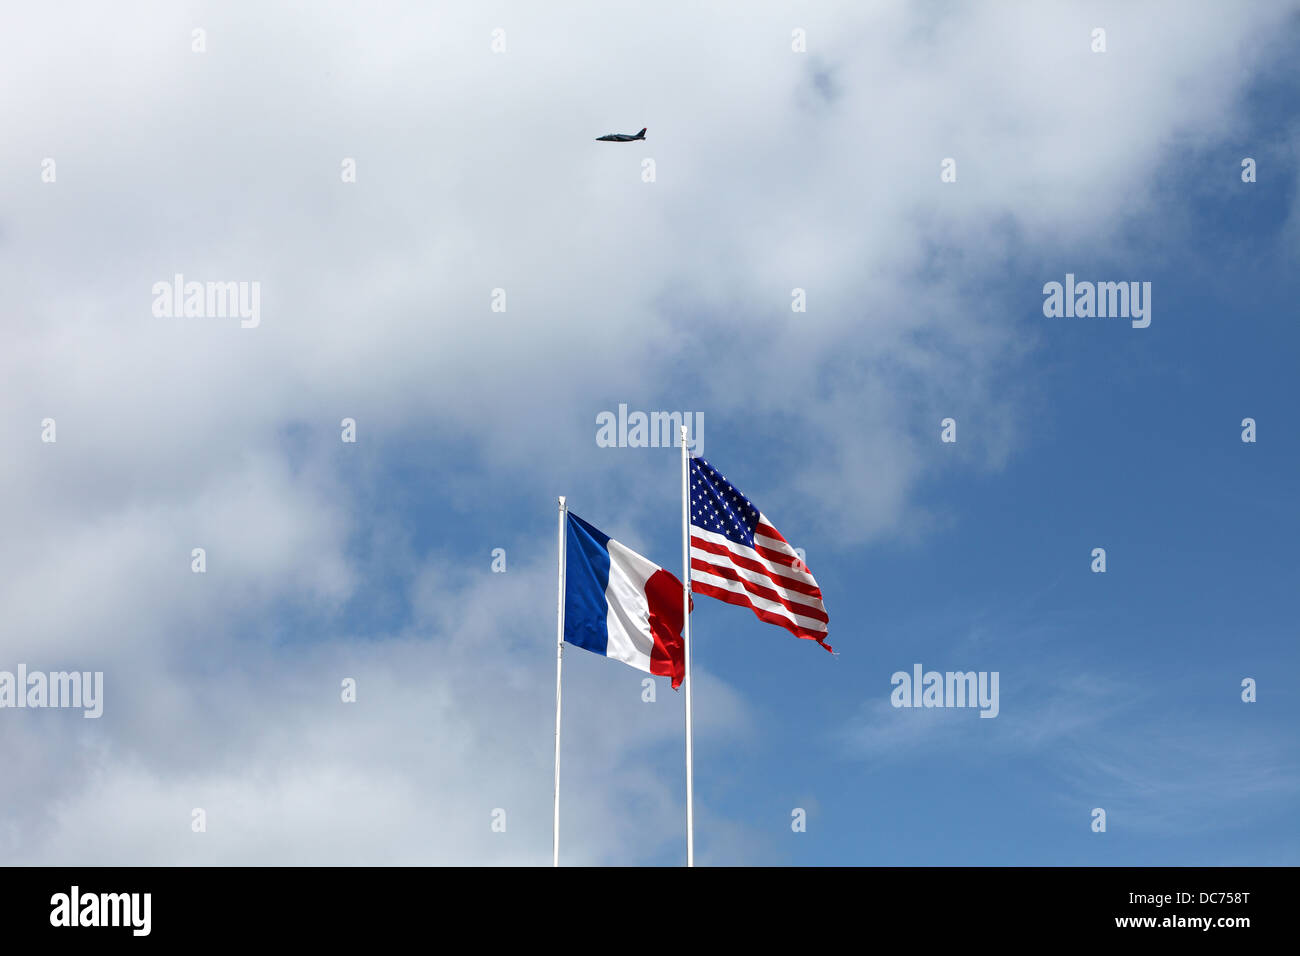 Amerikanische und französische Fahnen, Entente Cordiale. Hawker Jet fliegen über. Stockfoto